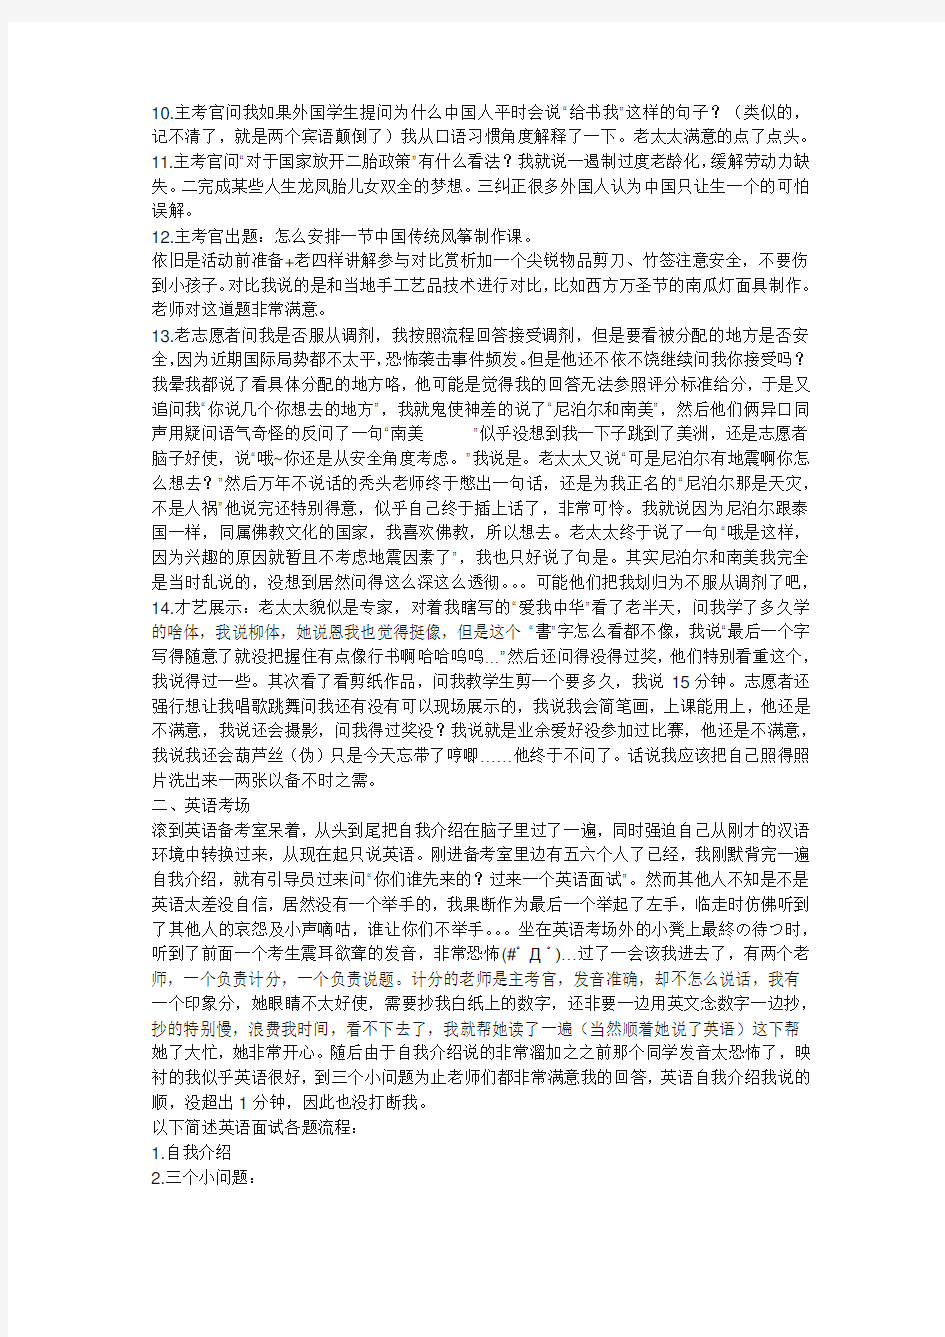 国家汉办汉语志愿者面试经验整理汇总解析